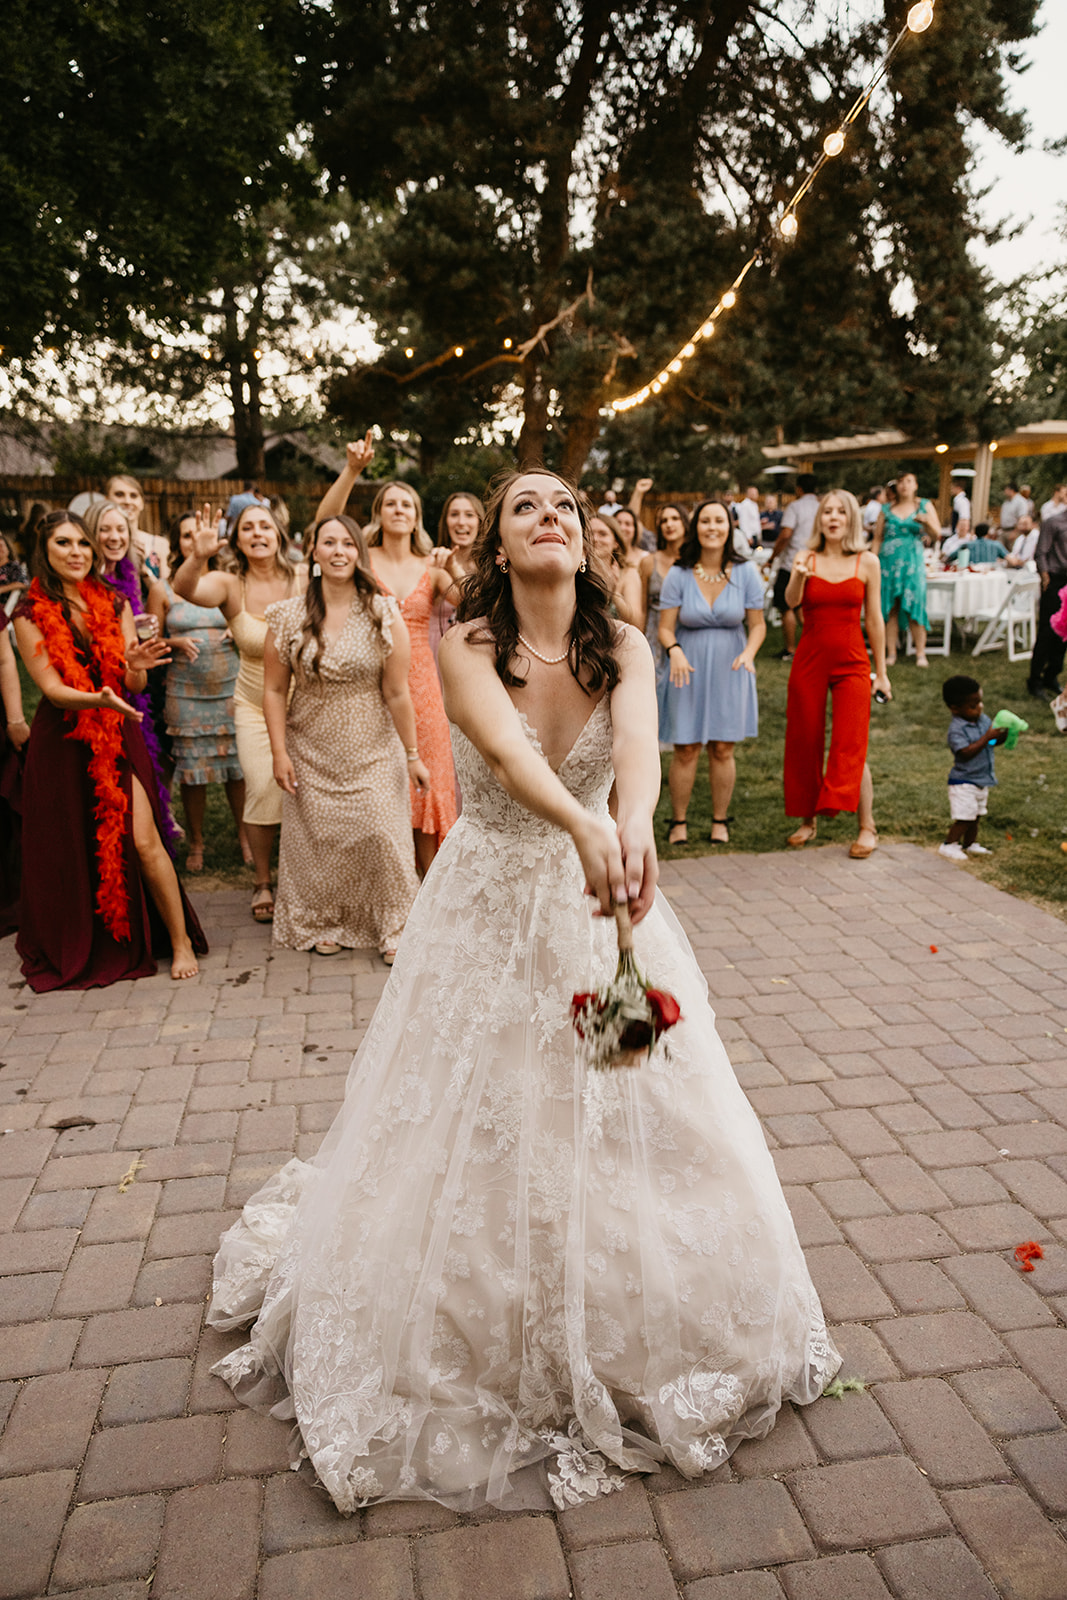 Bride tosses bouquet